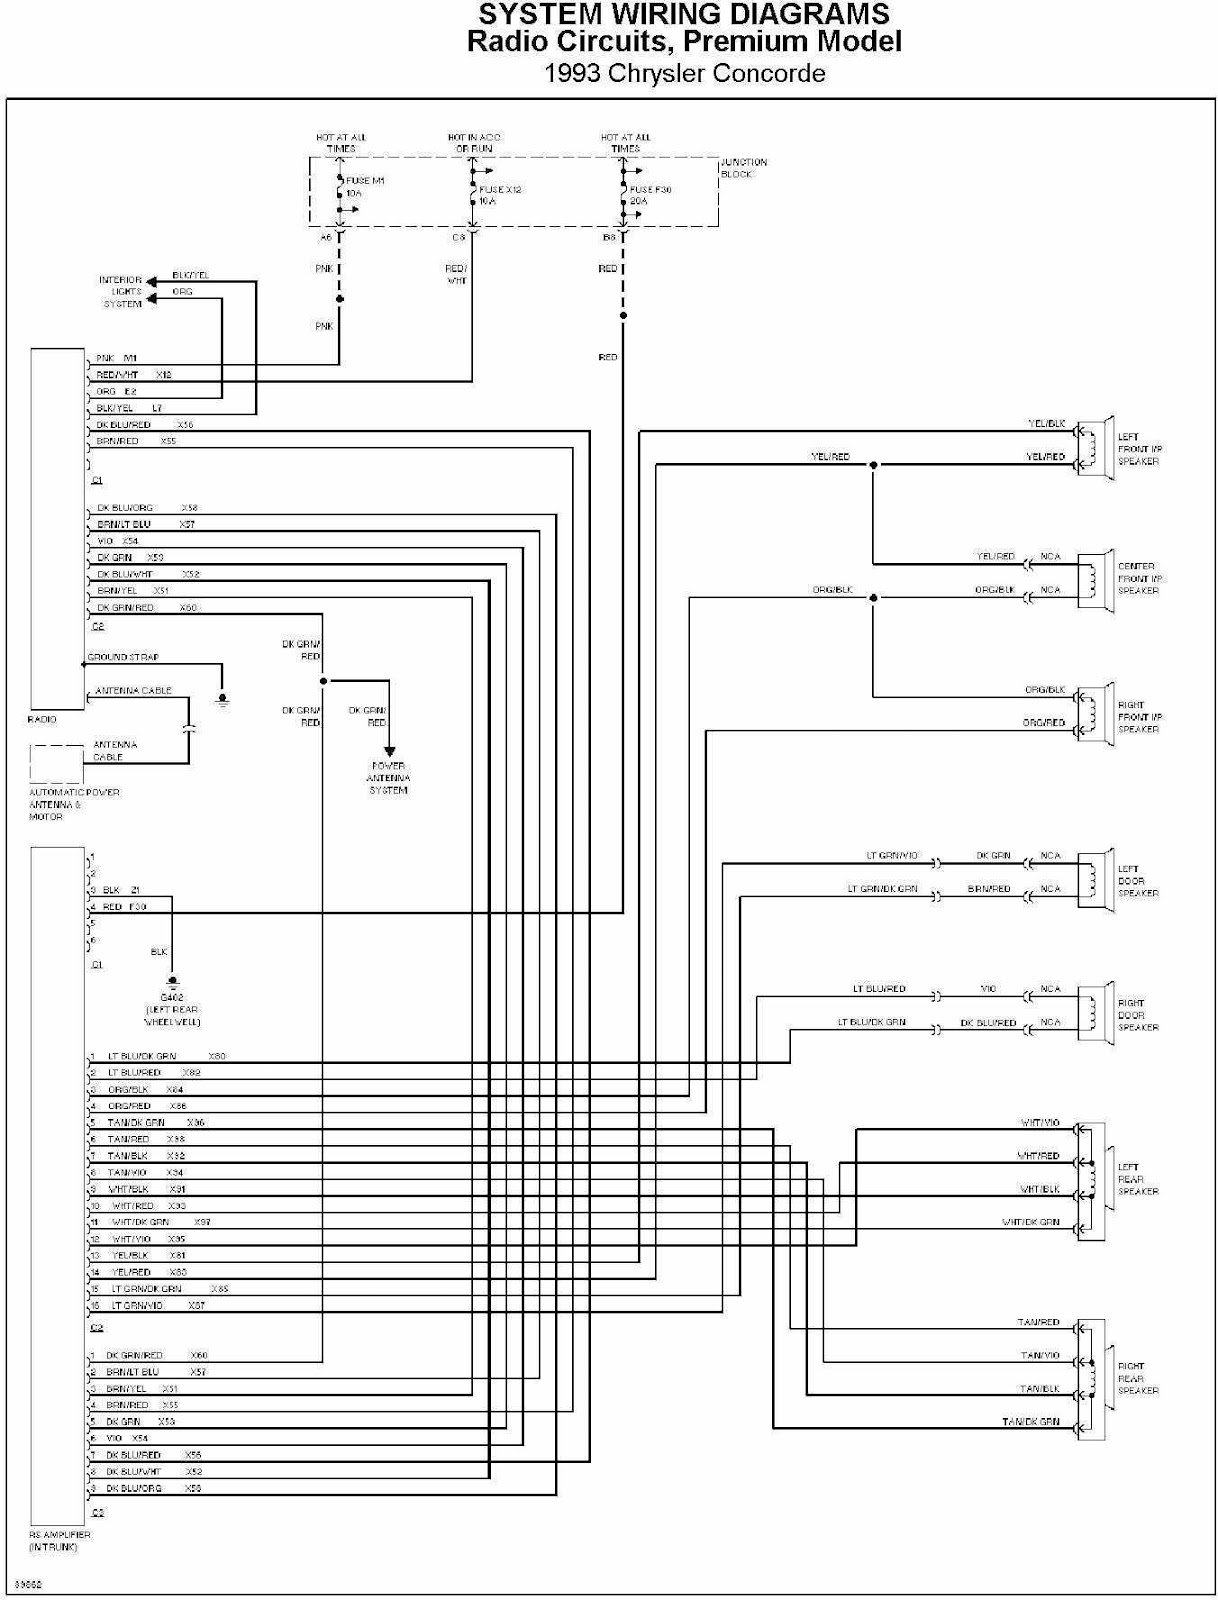 Electrical wiring diagram chrysler #4